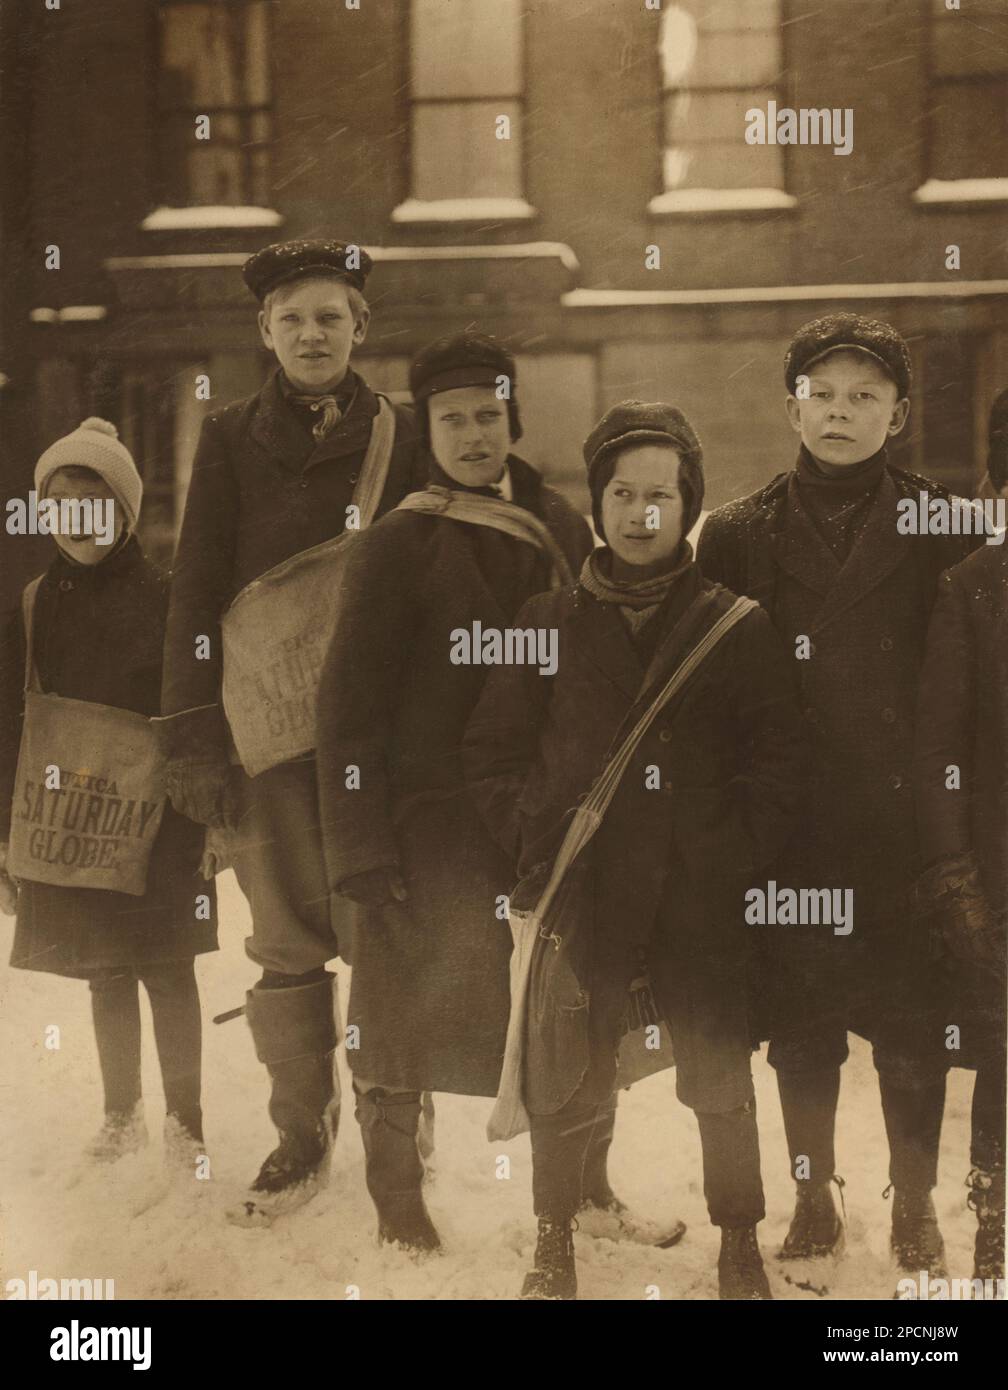 1910 , february, Utica, New York (State), USA : Newsboys under the Snow - NEWSBOYS , Fotos von LEWIS HINE ( 1874 - 1940 ) - BAMBINI -- LAVORATORI - BAMBINO - KINDERARBEITER - FABRIK - KINDHEIT - KINDHEIT - KIDNIEN - LAVORO MINORILE - LAVORO - ARBEIT - LAVORATORE - ARBEITNEHMER - OPERAIO - CLASSE OPERAIA LAVORATRICE - ARBEITERKLASSE - OPERAI - LAVORATORI - LAVORO - UNITI D' AMERICA - FOTO STORICHE - GESCHICHTE - PORTRÄT - RITRATTO - TEMPI MODERNI - MODERN TIMES - HAT - CAPPELLO - TURNO DI LAVORO - GIORNALAIO - GIORNALAI - STRILLONI - VENDITORI DI GIORNALI QUOTIDINI AMBULANTI - AMBULANTE - NEVE Stockfoto